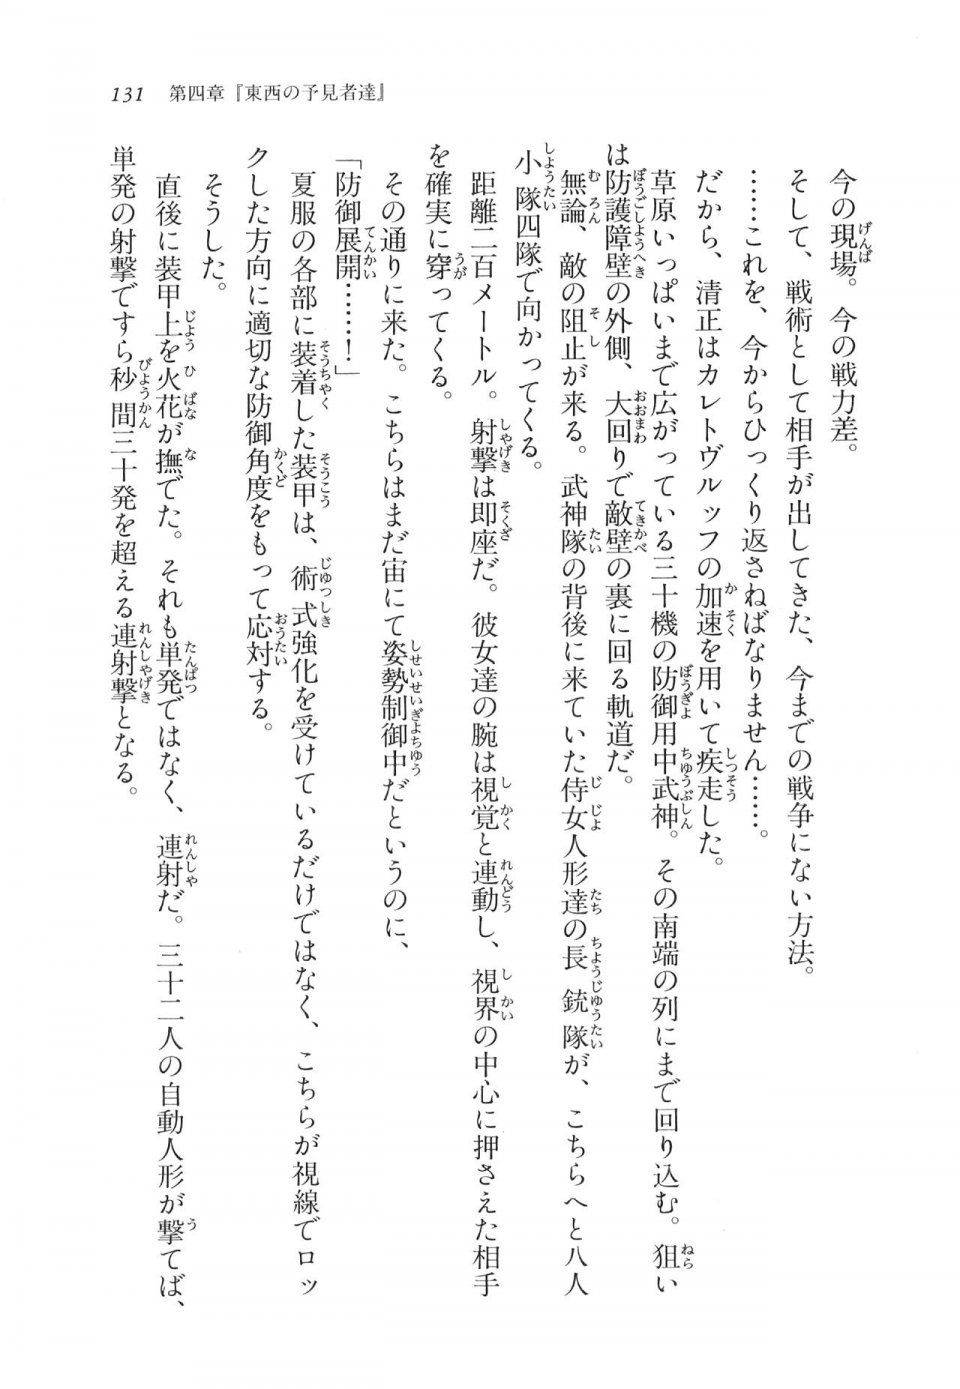 Kyoukai Senjou no Horizon LN Vol 11(5A) - Photo #131